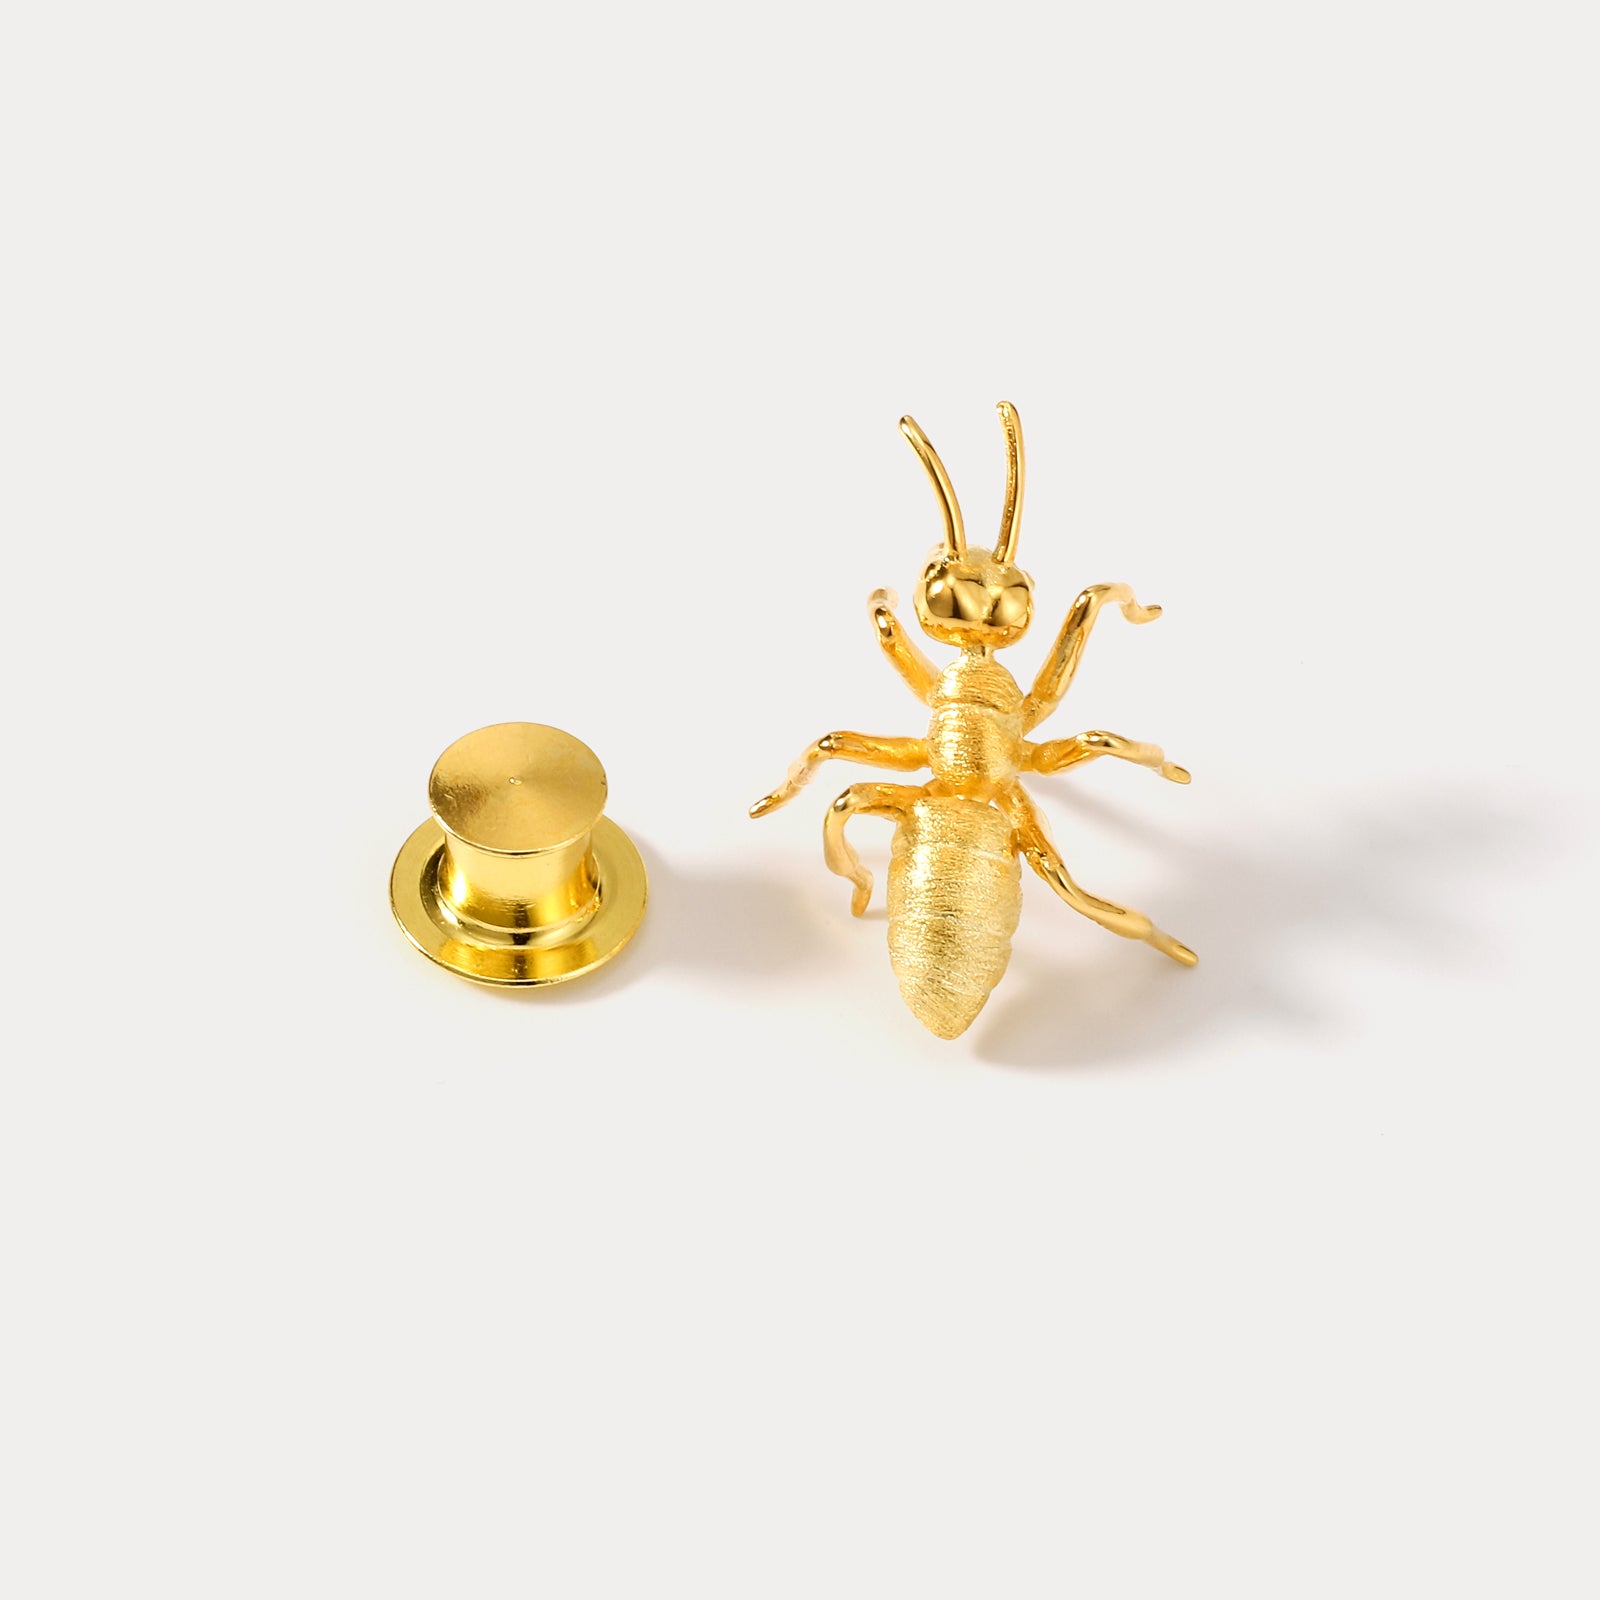 Vintage Gold Ant Brooch